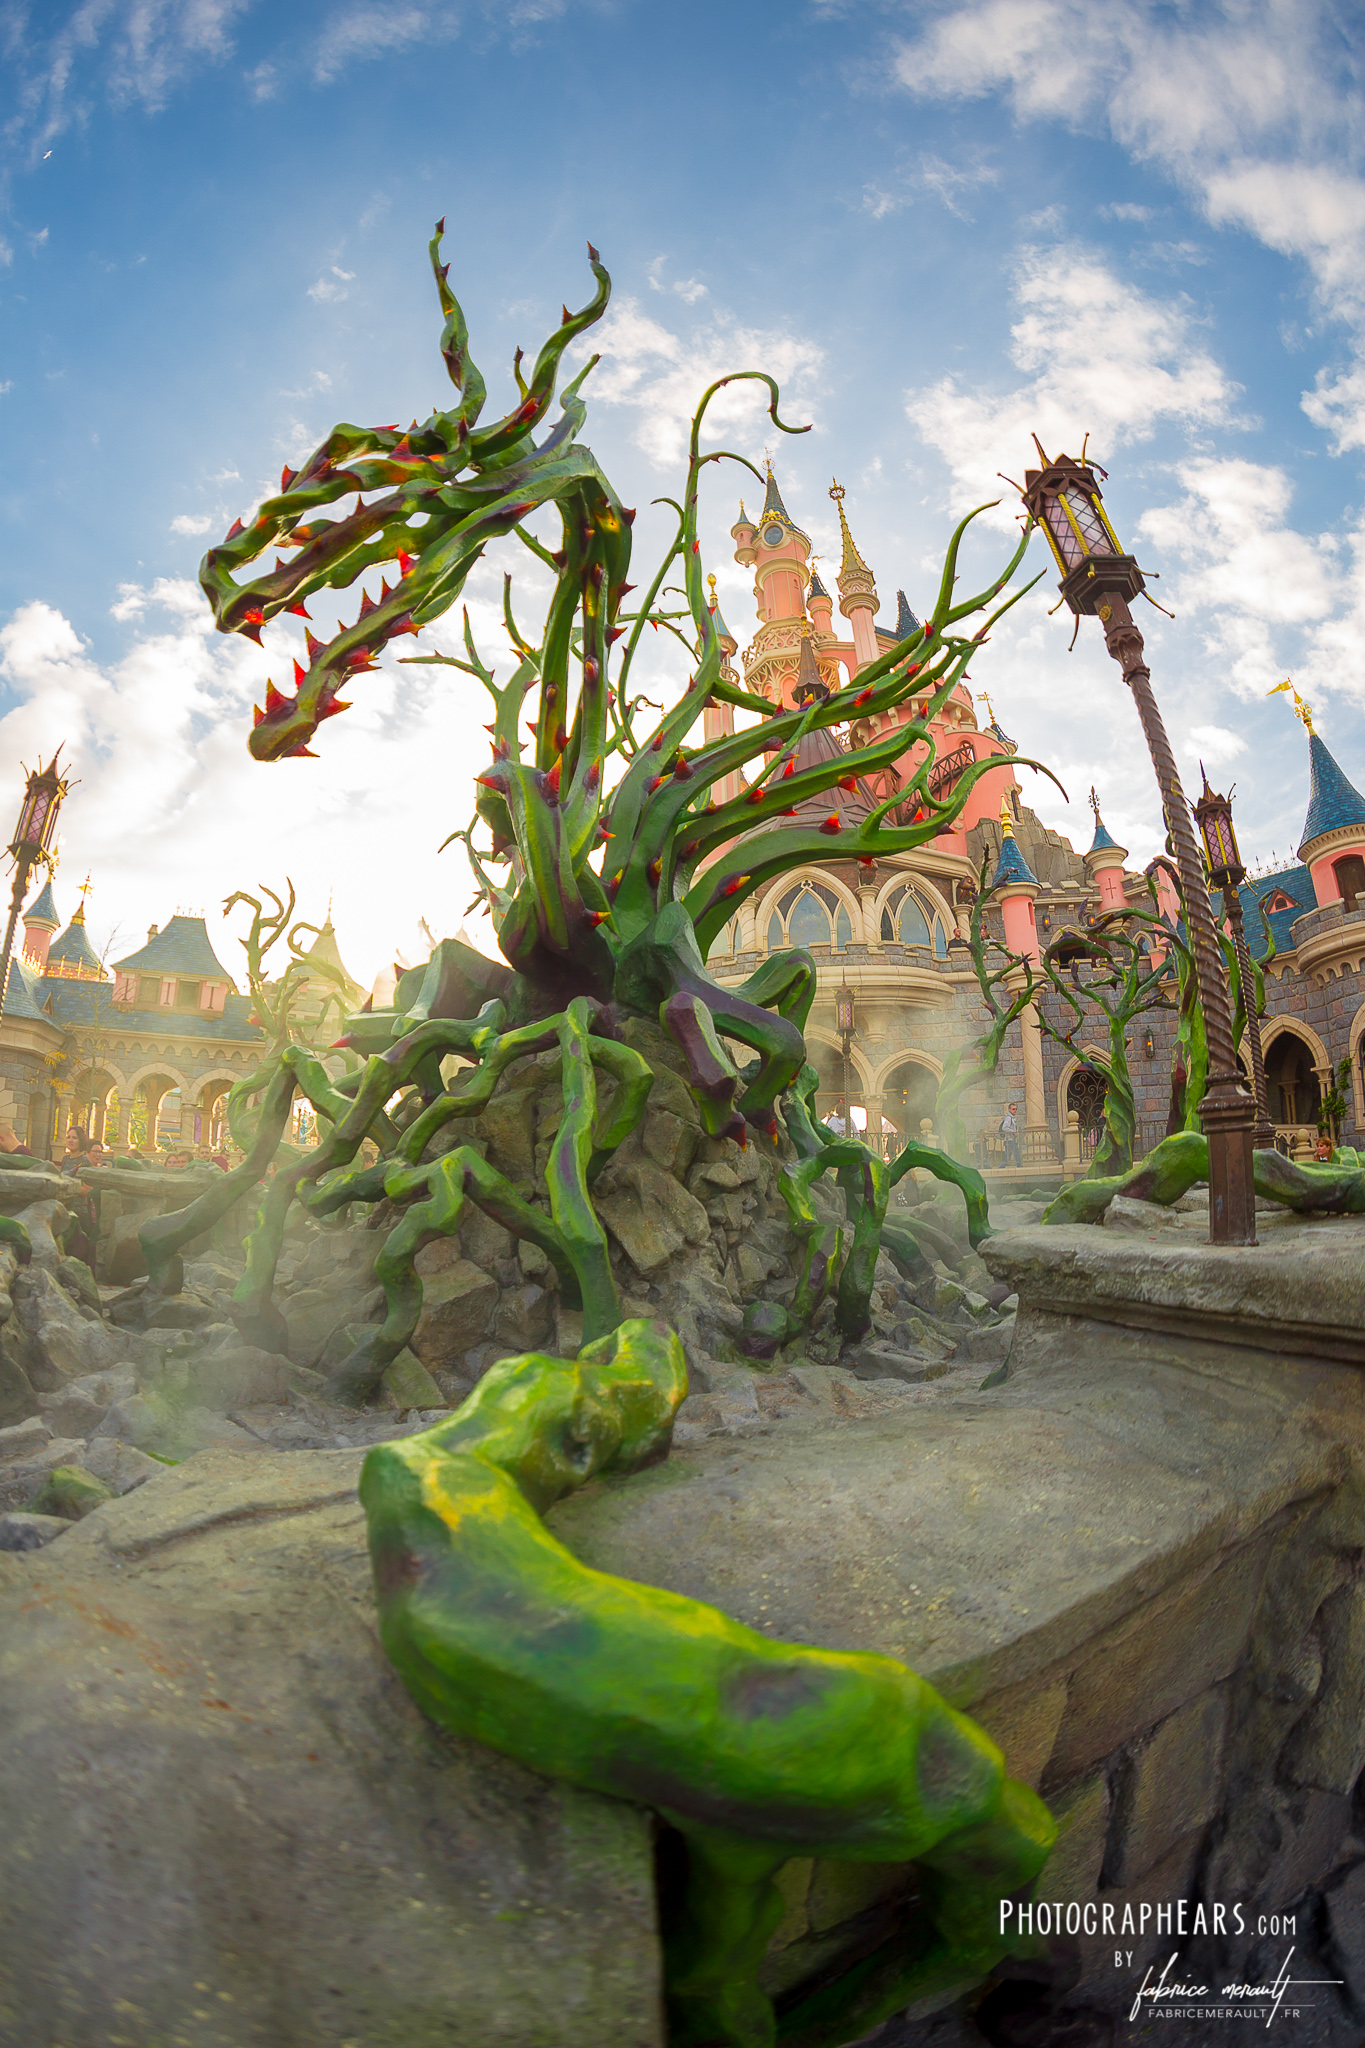 Disneyland Paris Halloween Festival 2018 - Dragon maléfique en ronces autour du château de la Belle au Bois Dormant